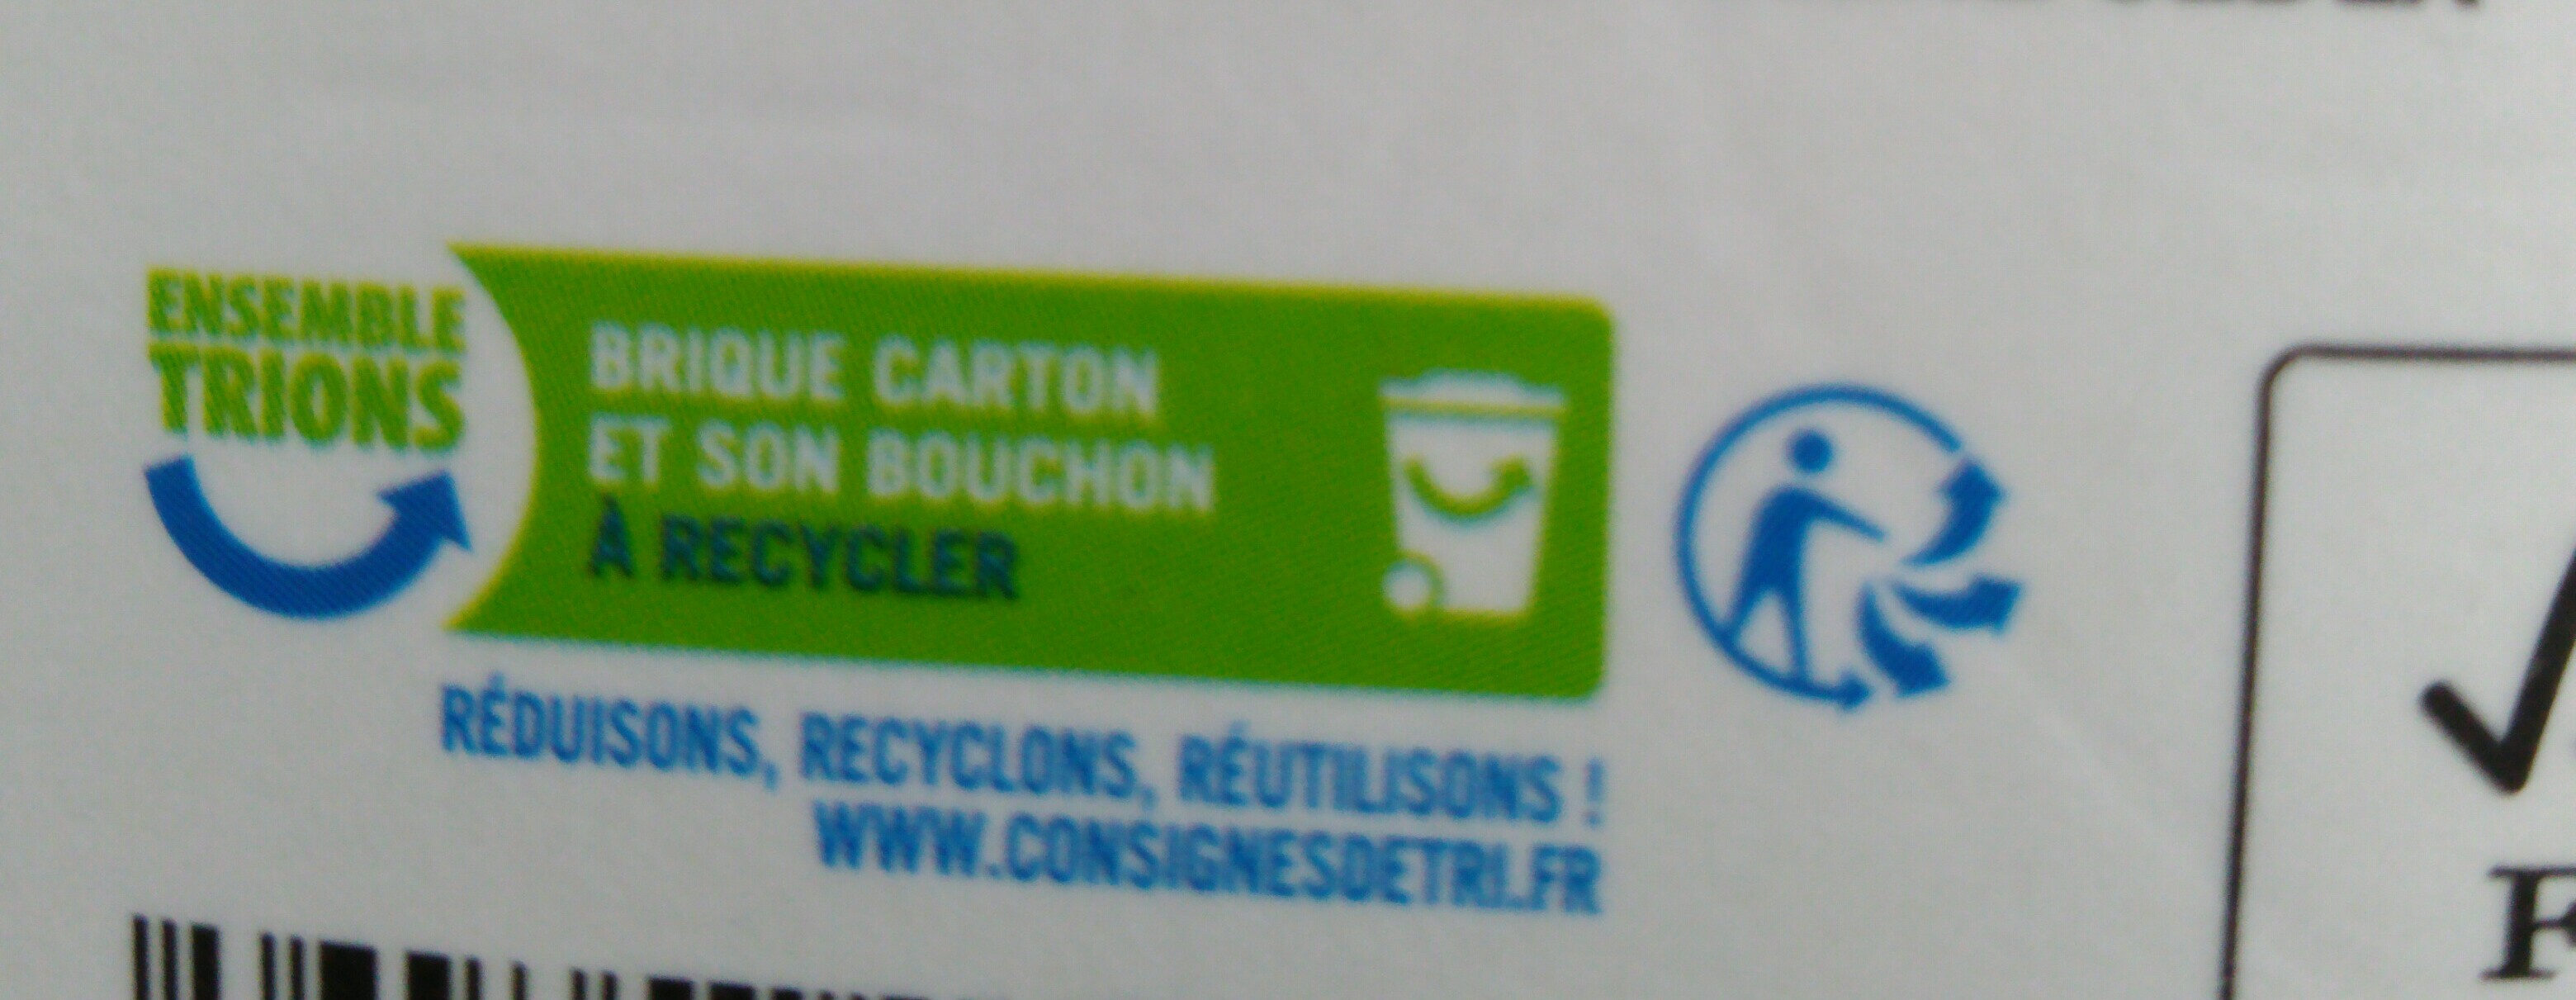 100% pur jus Orange - Instruction de recyclage et/ou informations d'emballage